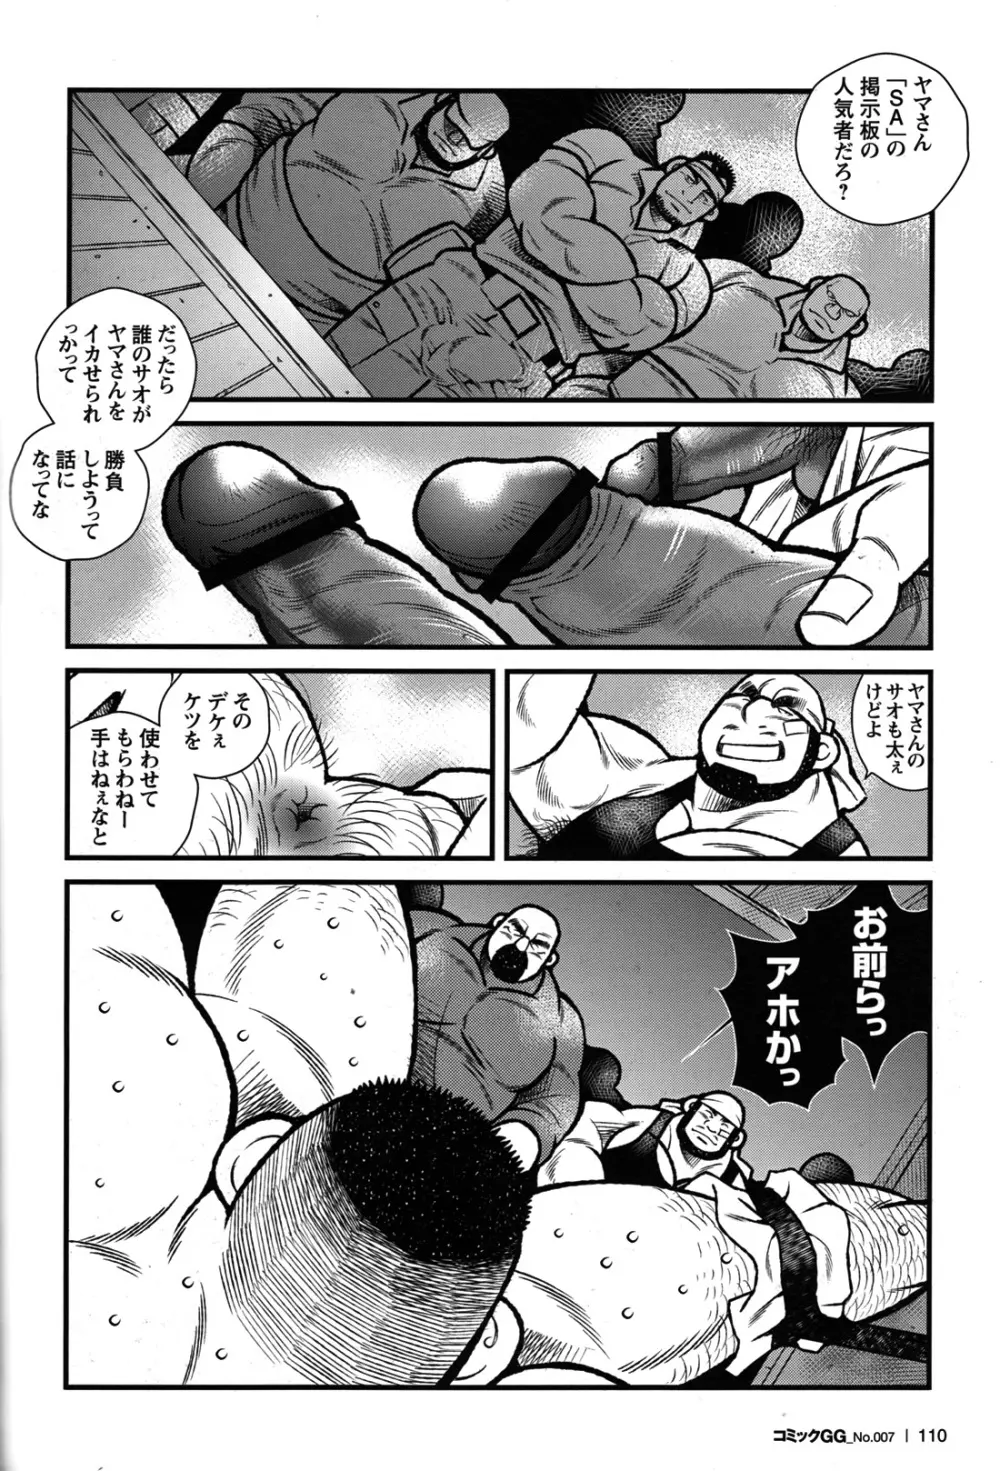 Comic G-men Gaho No.07 98ページ